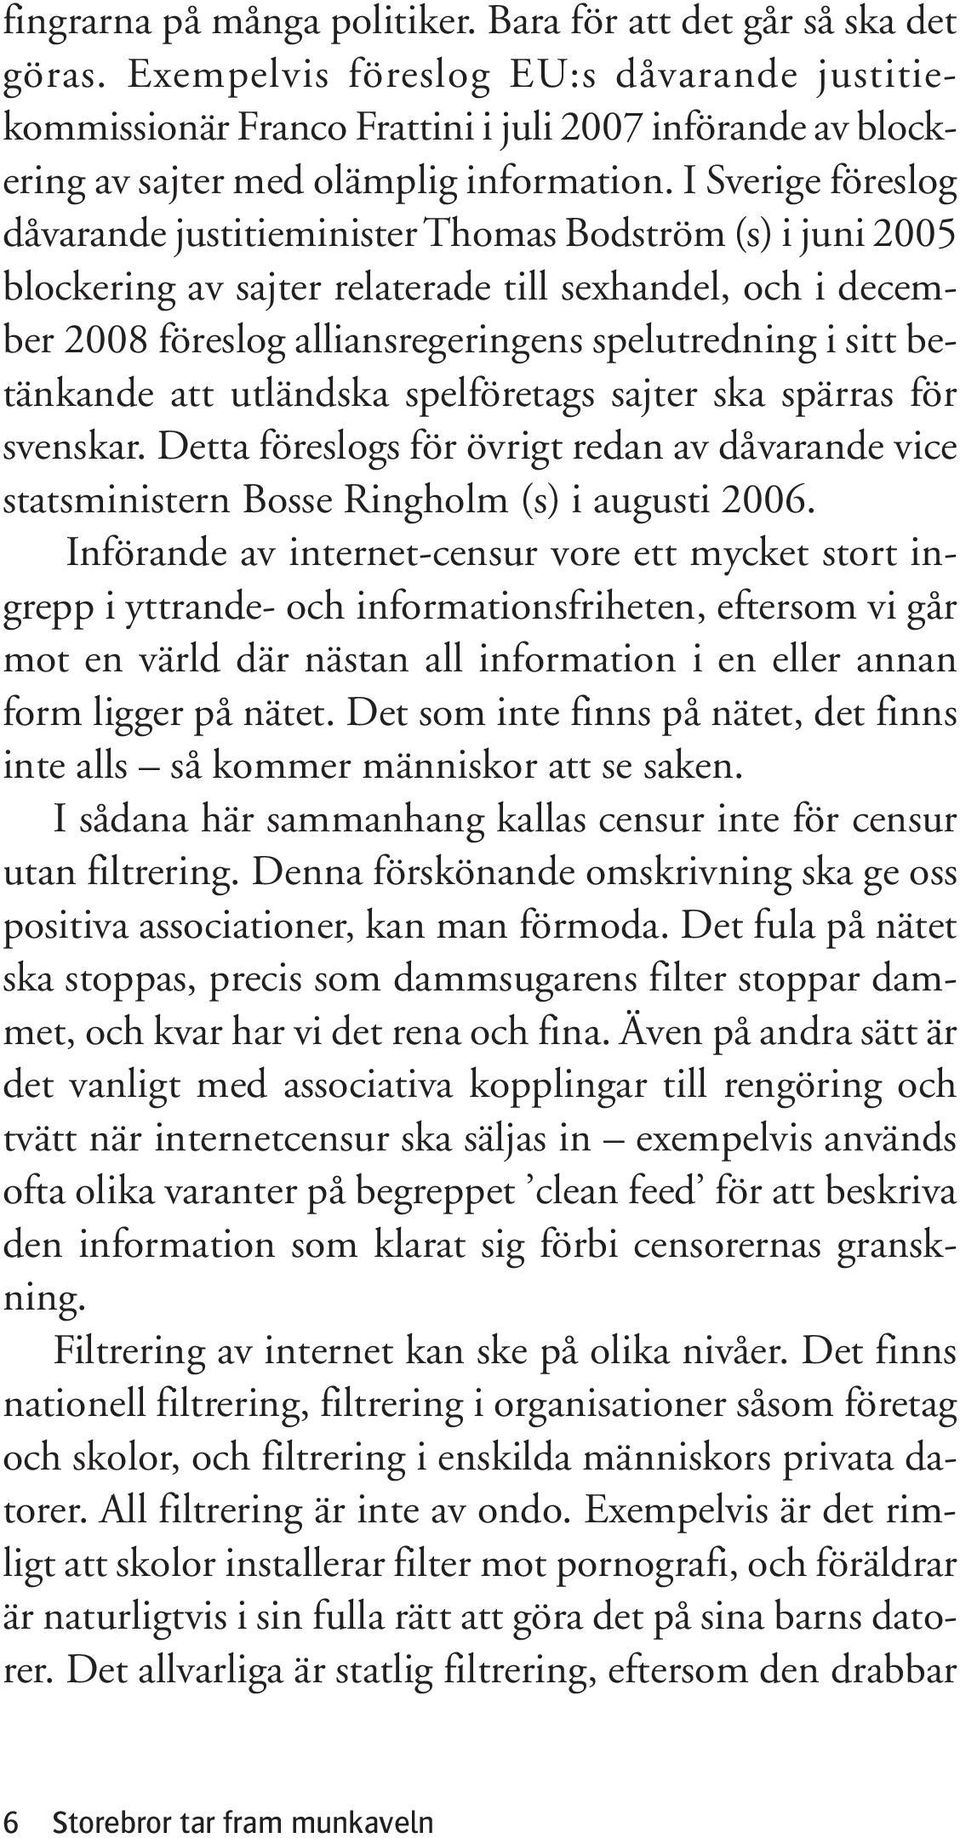 I Sverige föreslog dåvarande justitieminister Thomas Bodström (s) i juni 2005 blockering av sajter relaterade till sexhandel, och i december 2008 föreslog alliansregeringens spelutredning i sitt